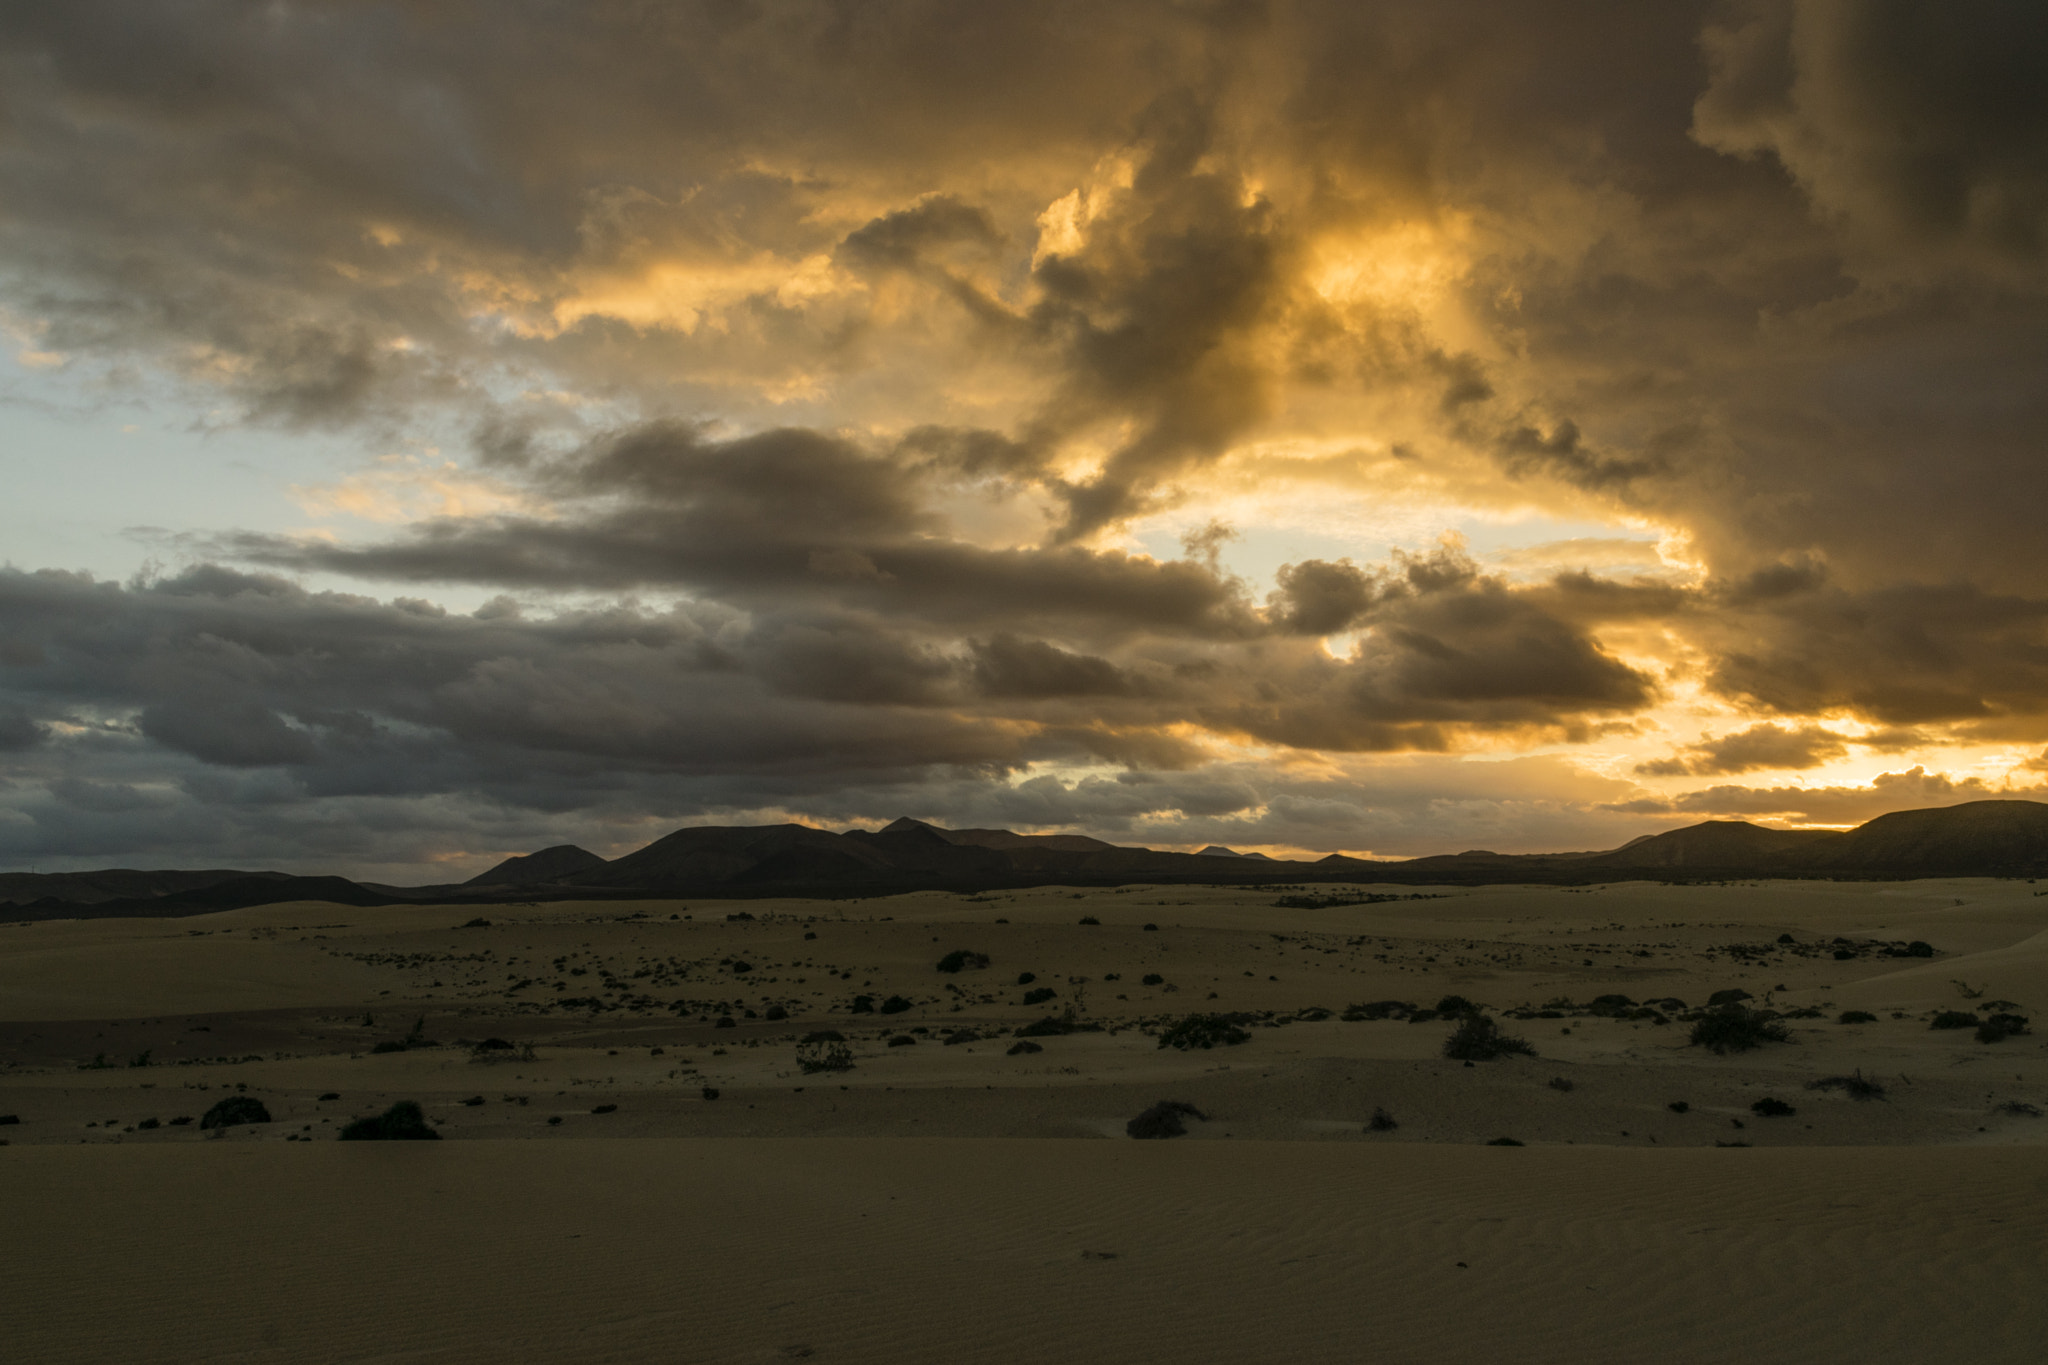 Nikon D5300 + Nikon AF-S DX Nikkor 16-85mm F3.5-5.6G ED VR sample photo. Sunset in desert photography